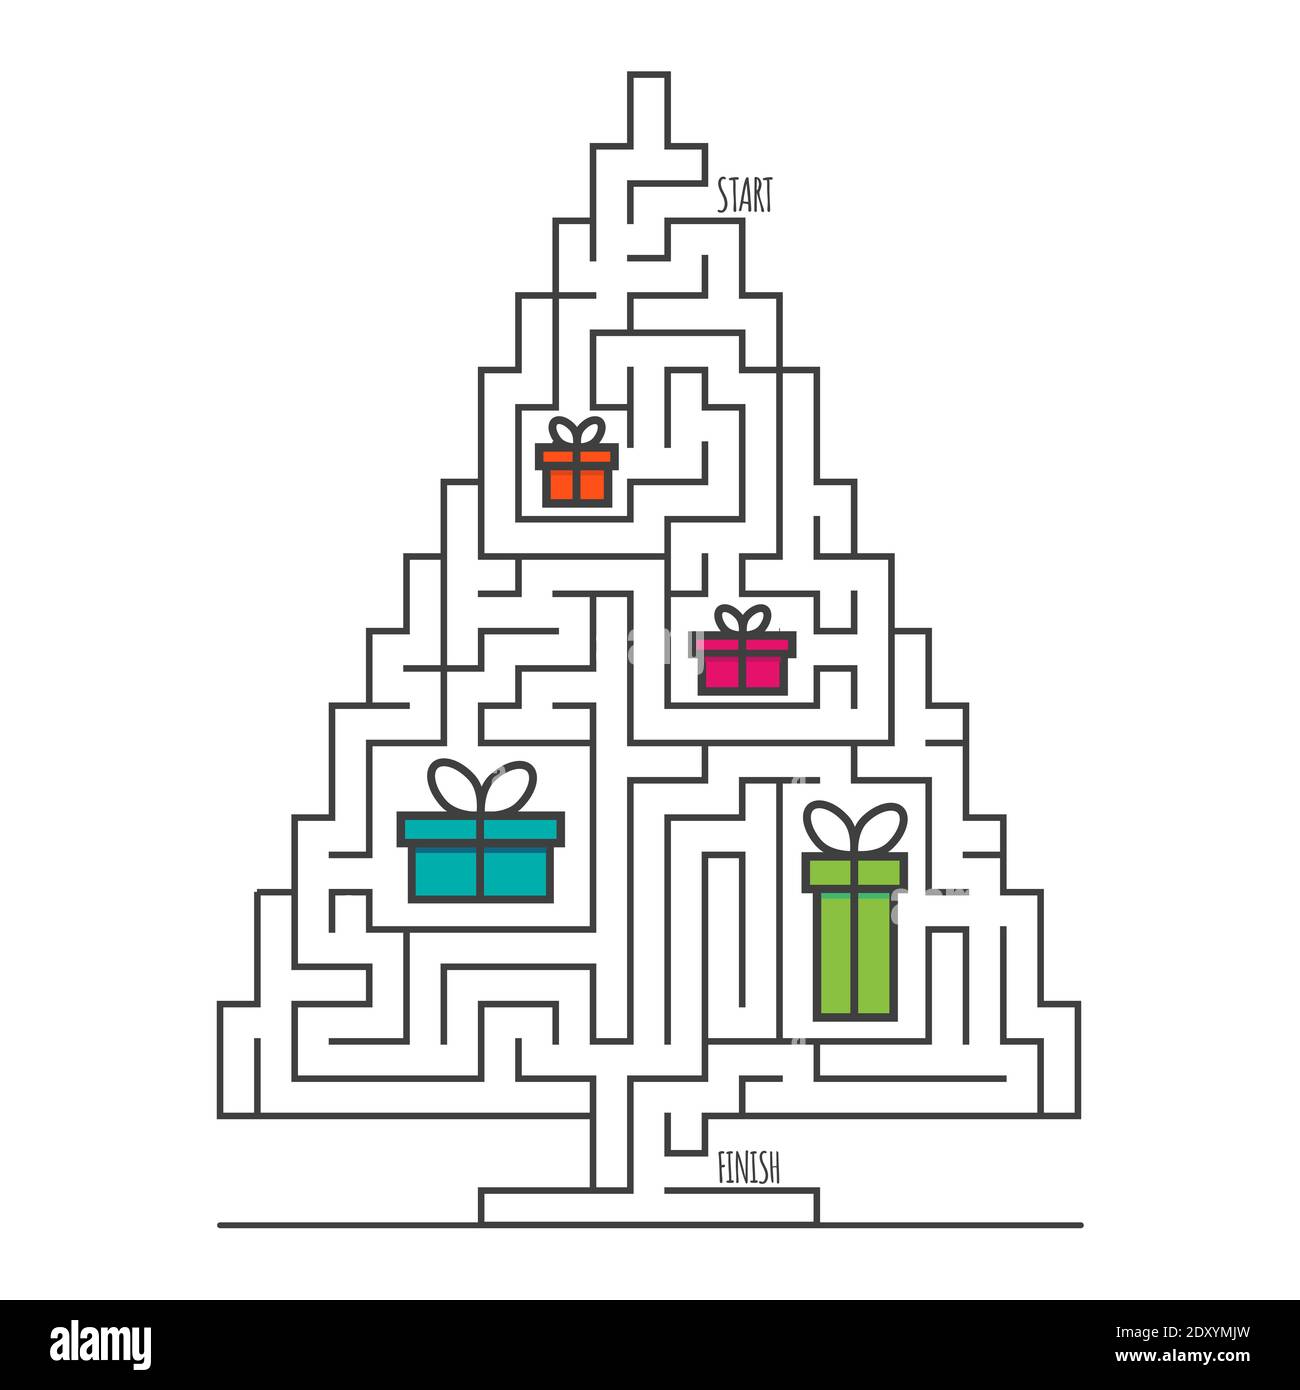 Albero di Natale labirinto gioco labirinto per bambini. Logica labirintica. Un ingresso e un modo giusto per andare. Immagine piatta vettoriale Illustrazione Vettoriale